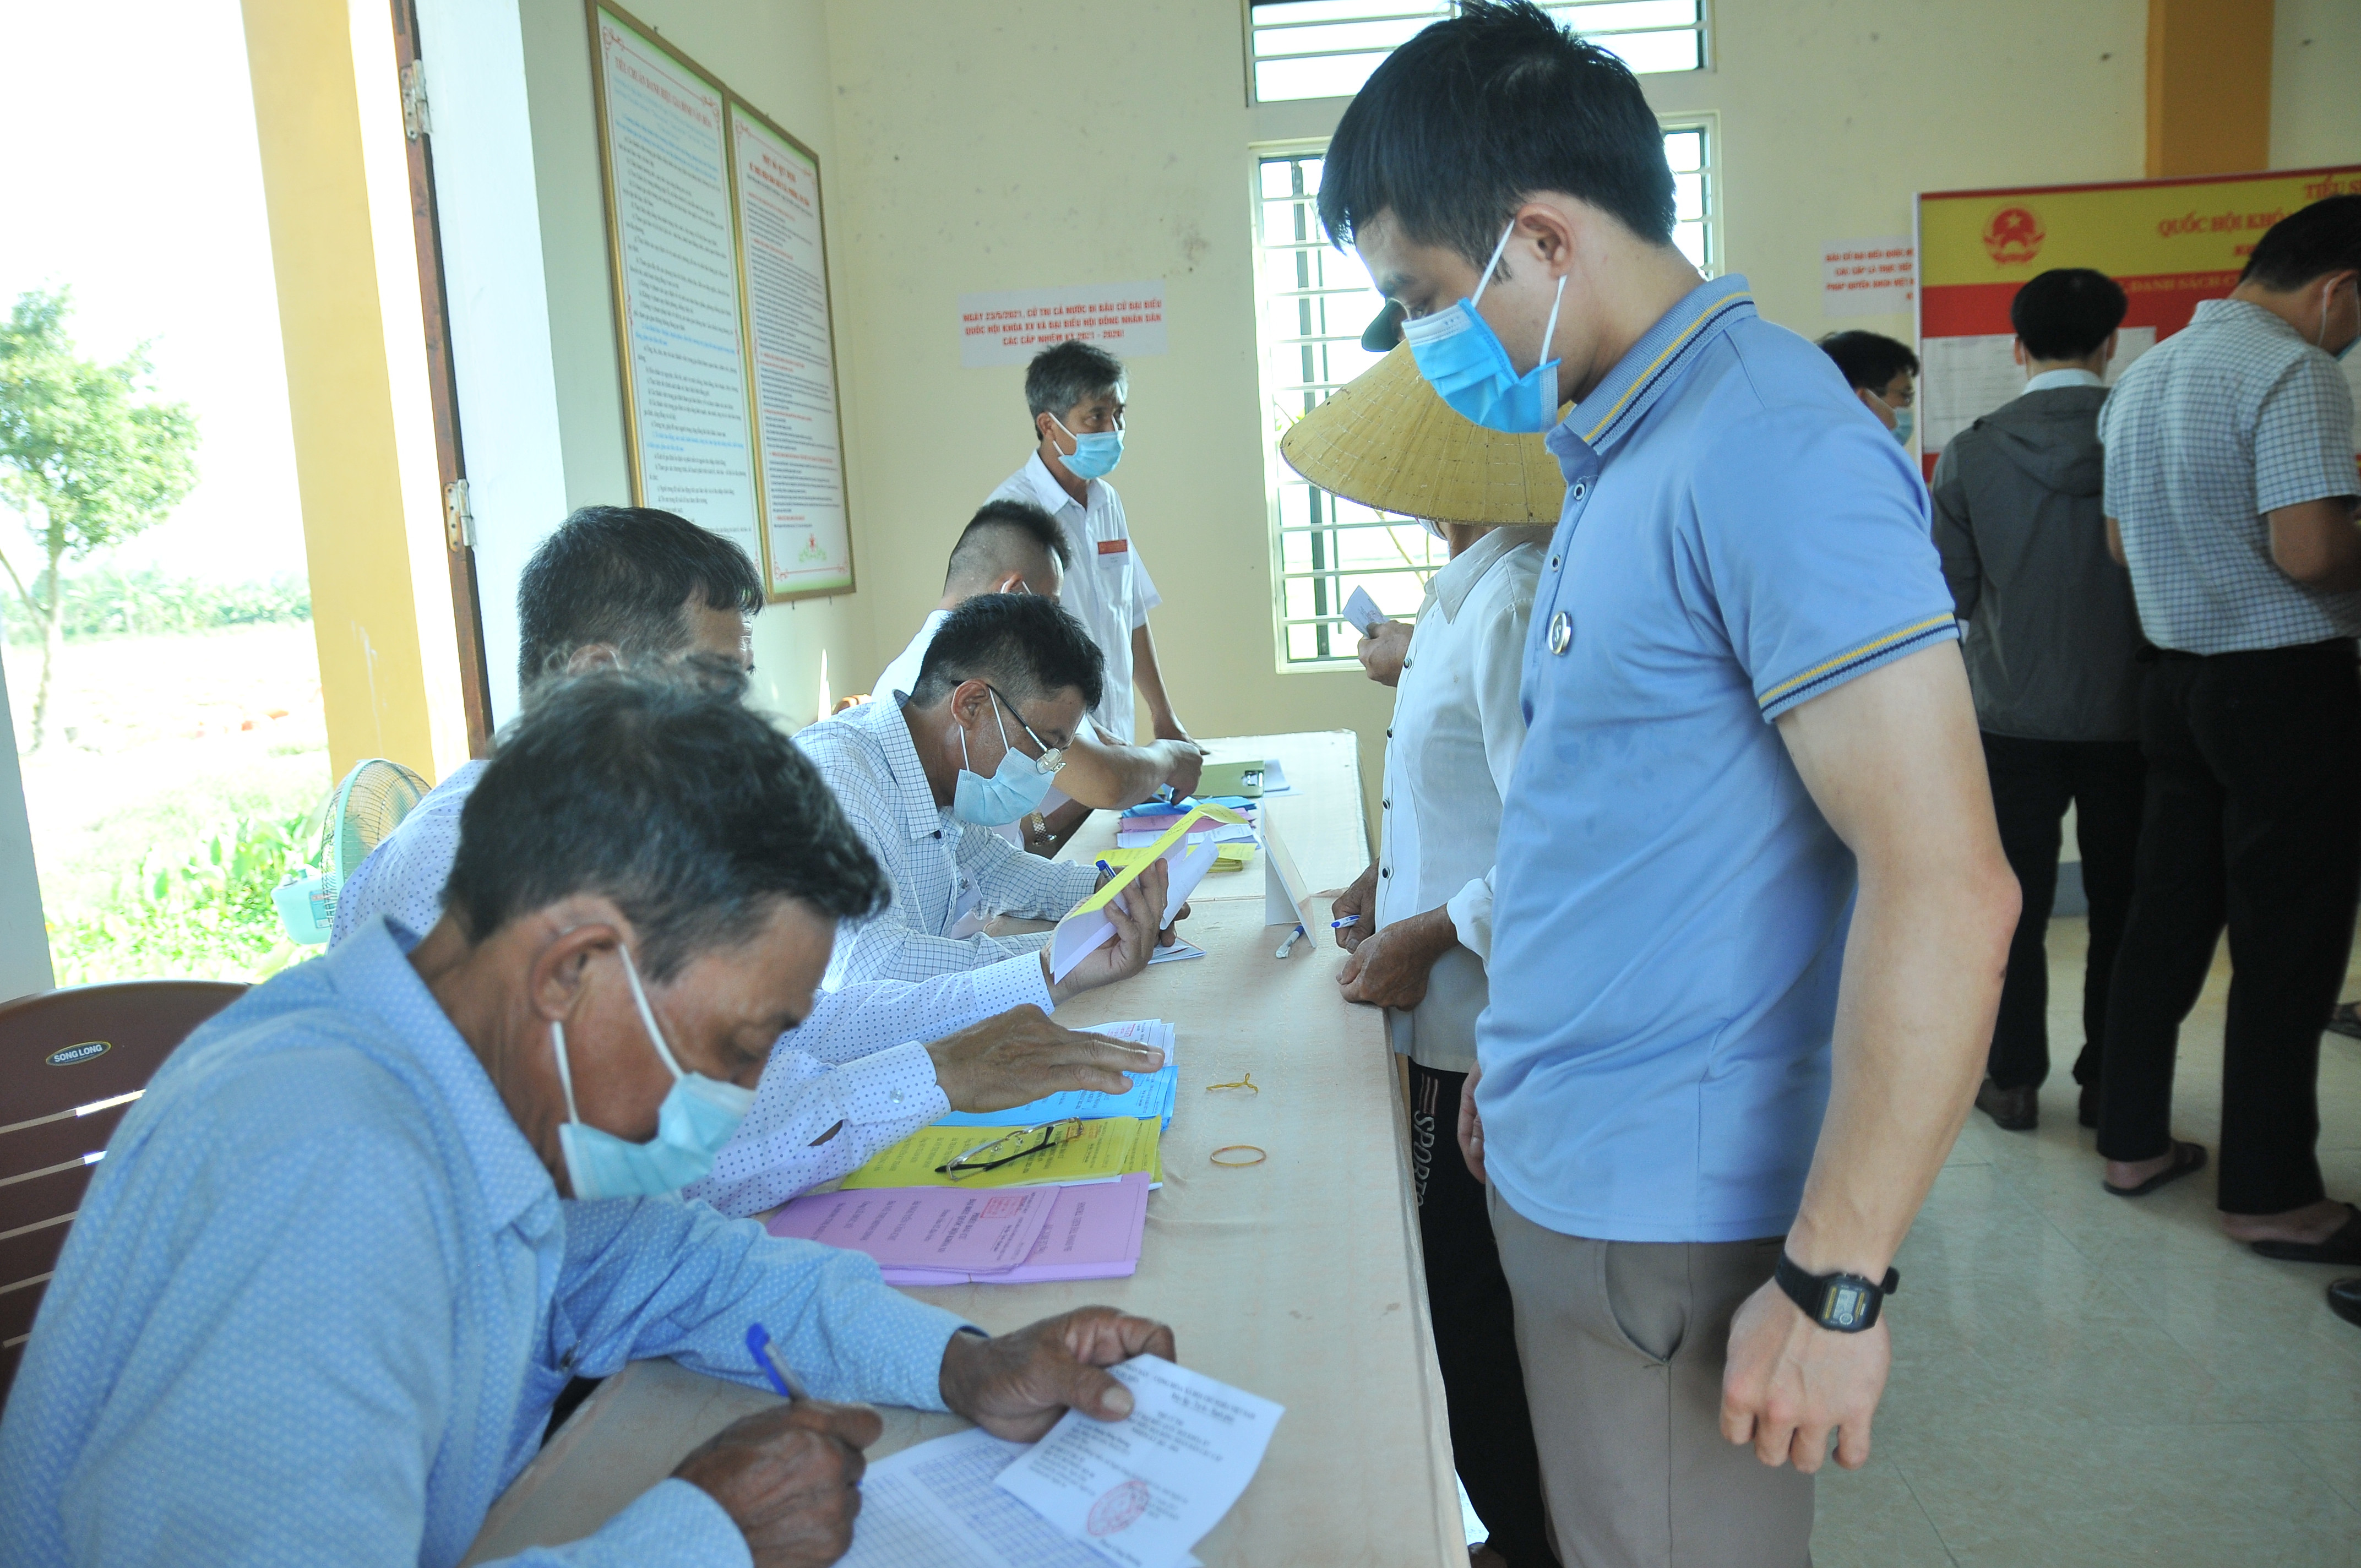 Sau buổi lễ tại nhà thờ, đông đảo cử tri xã Nghi Diên đã đến các điểm bỏ phiếu thực hiện quyền công dân của mình. Ảnh: Tiến Đông